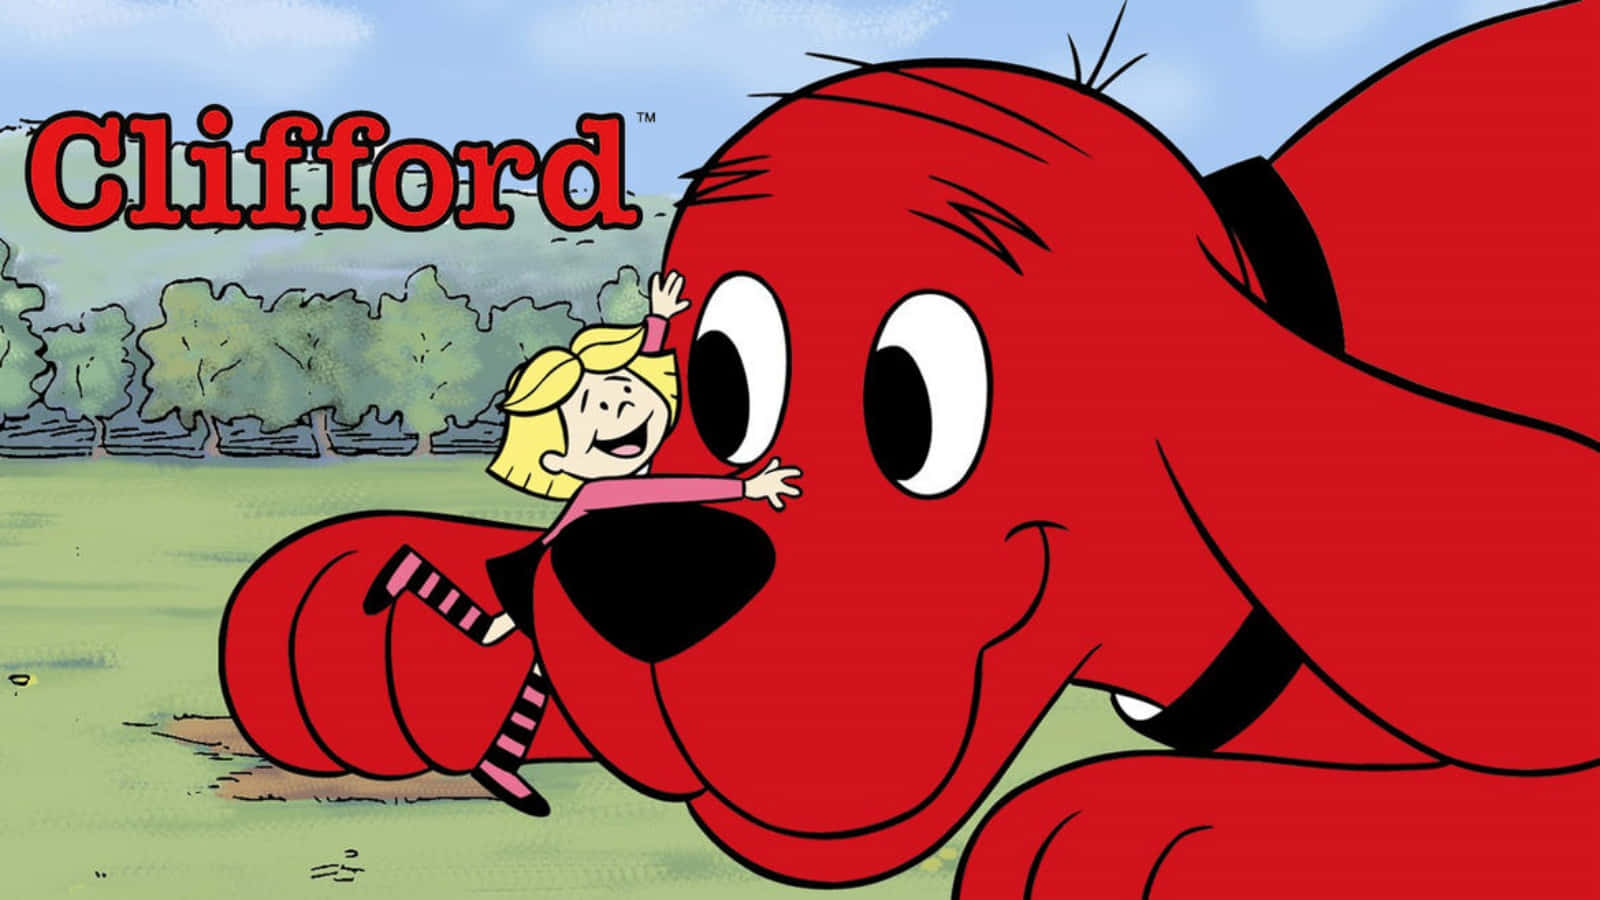 Clifford,der Große Rote Hund, Mit Seinem Warmen Und Einladenden Lächeln.